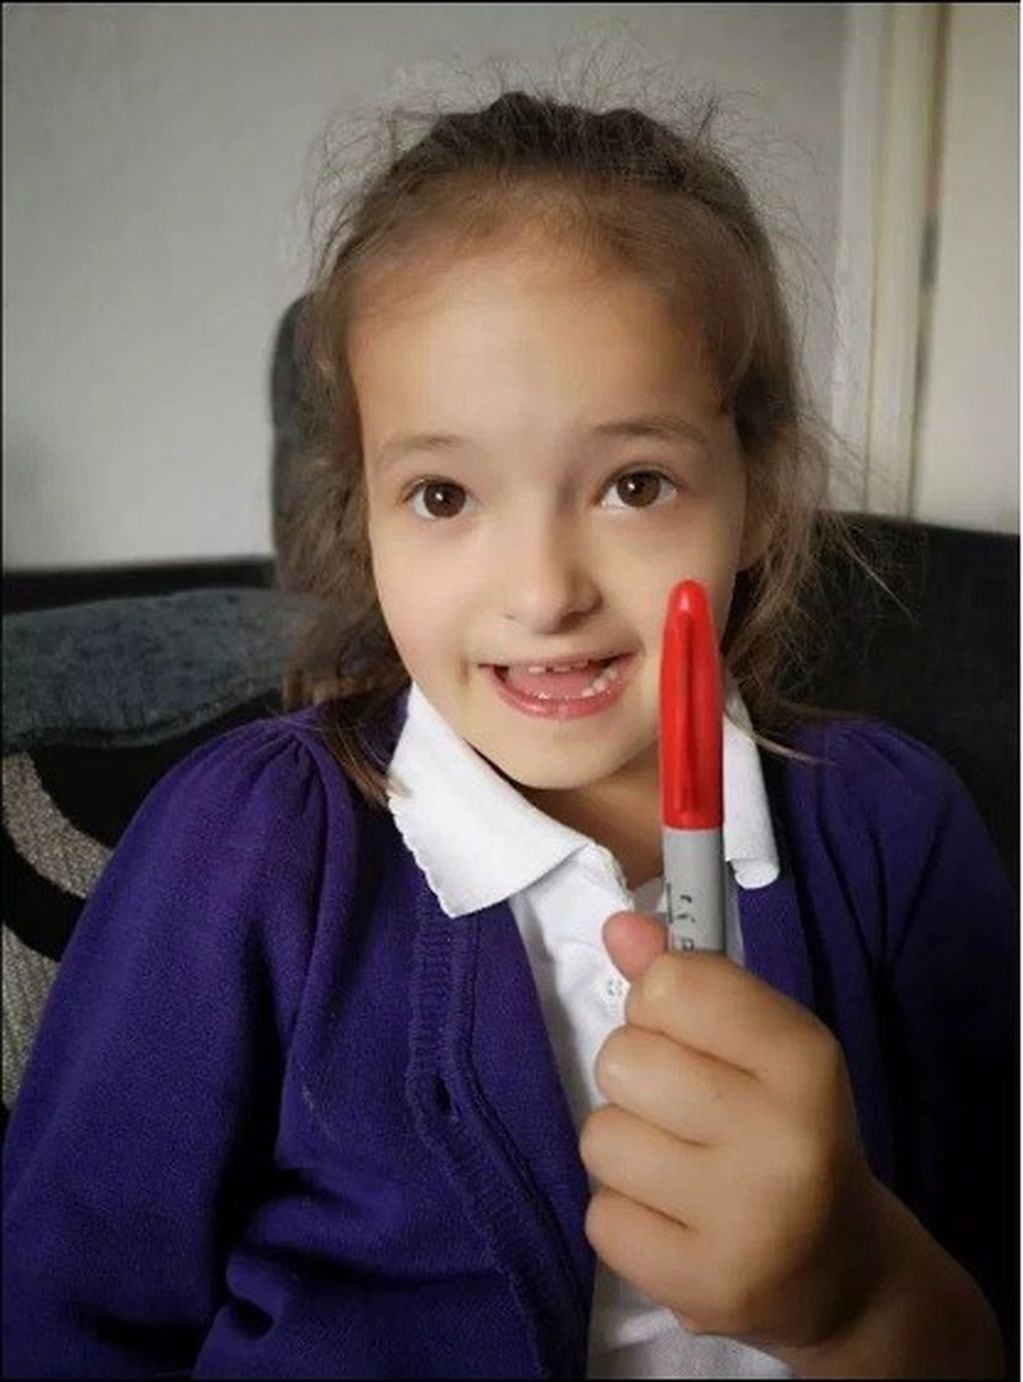 Lily Schooley, una niña inglesa de seis años, quiso evitar un examen y se pintó manchas rojas en la piel con marcador permanente. (foto: Facebook)